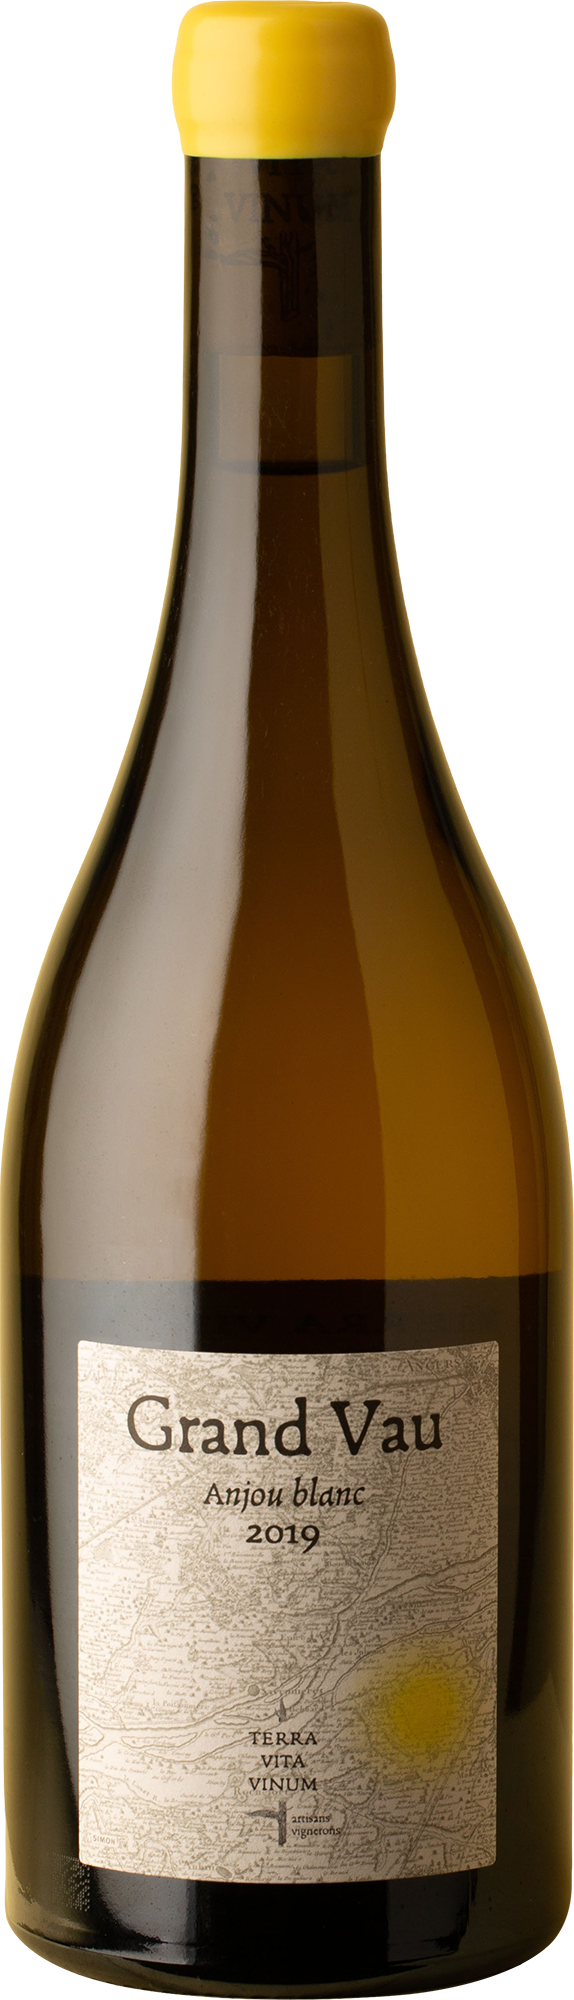 Terre Vita Vinum - Anjou Blanc Grand Vau Chenin Blanc 2019 White Wine